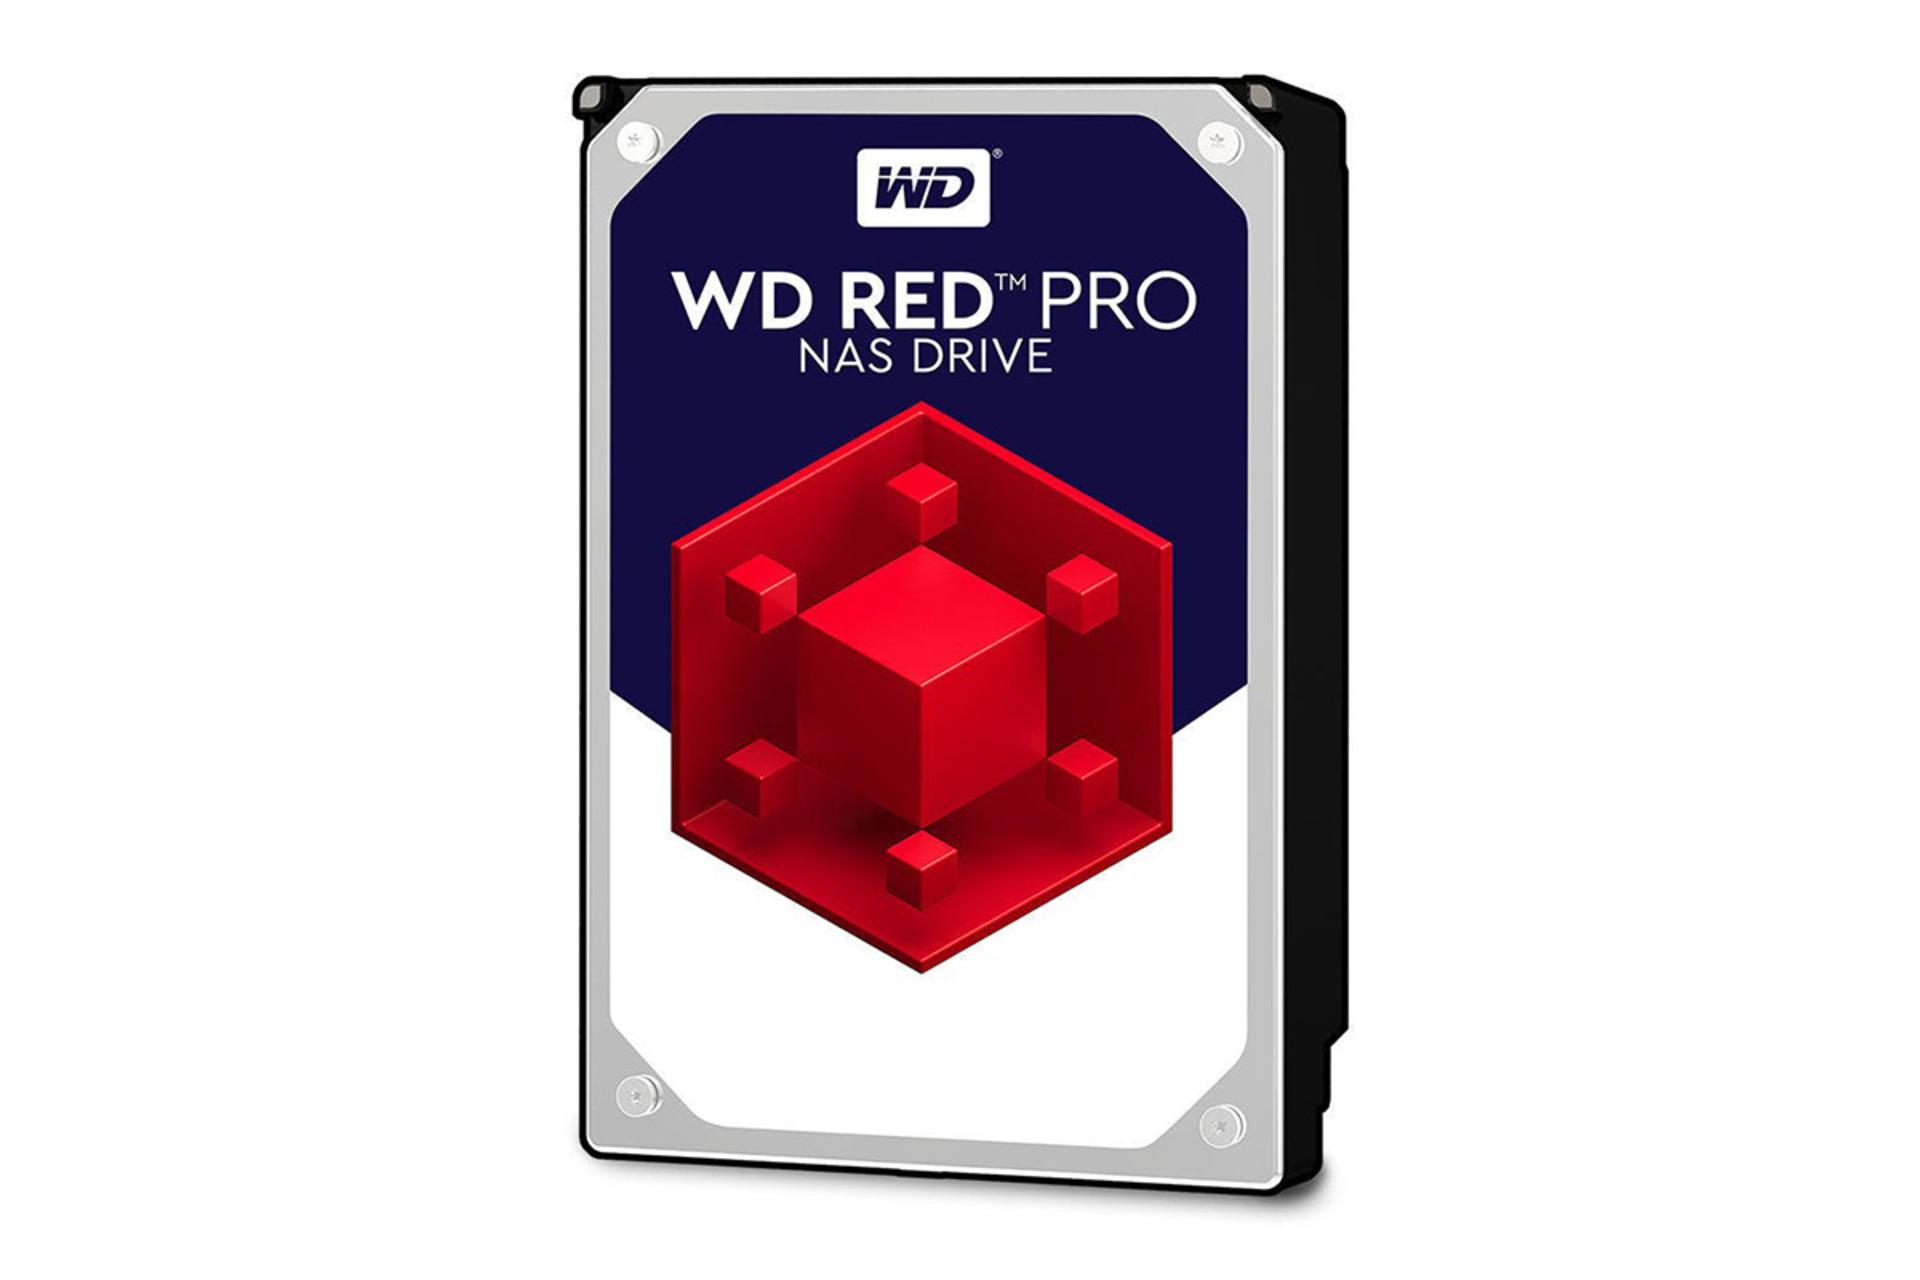 Western Digital Red Pro WD8001FFWX 8TB